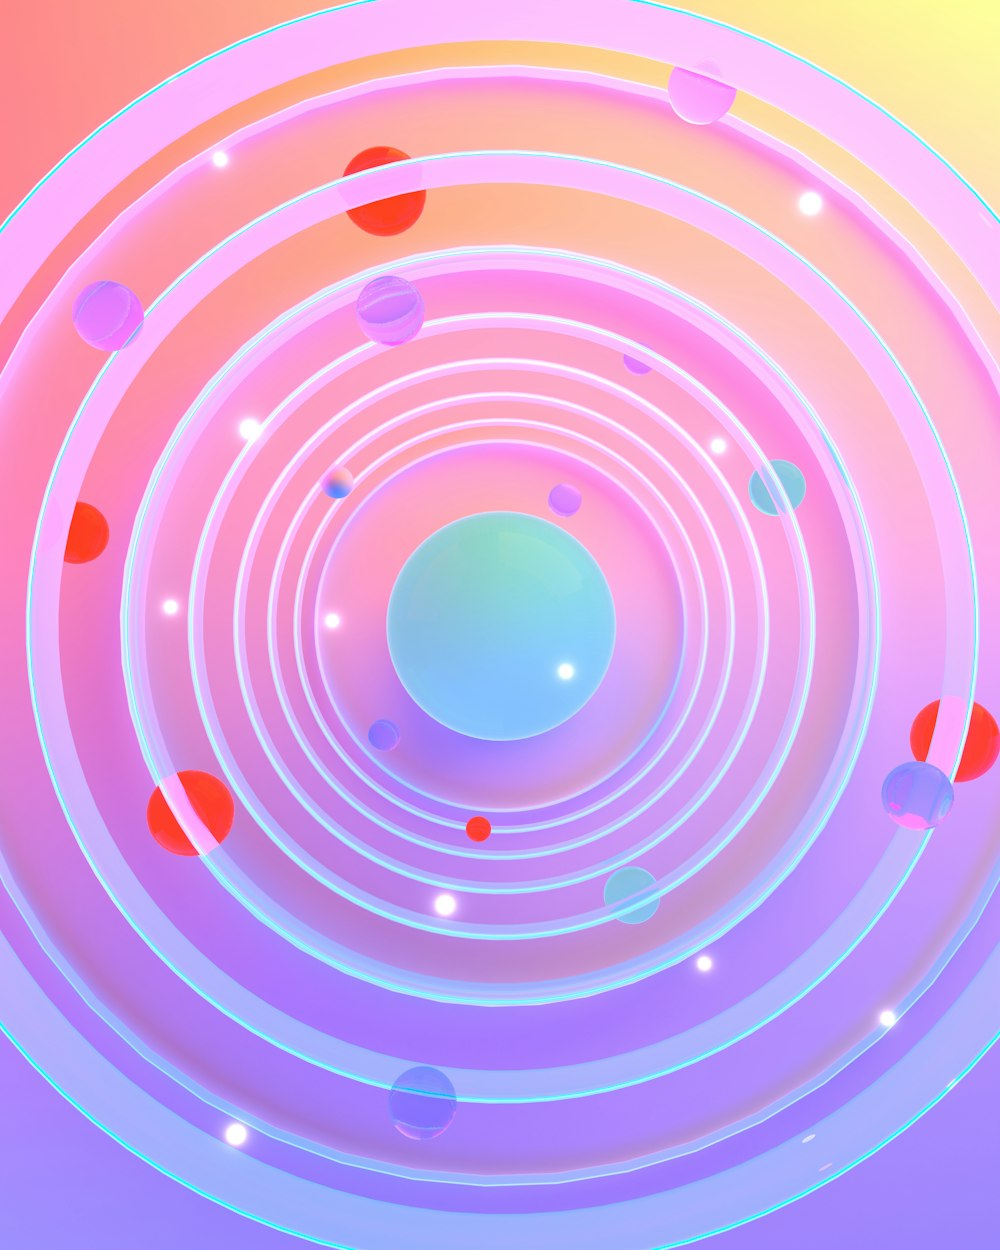 uma foto abstrata de um objeto circular com um centro azul